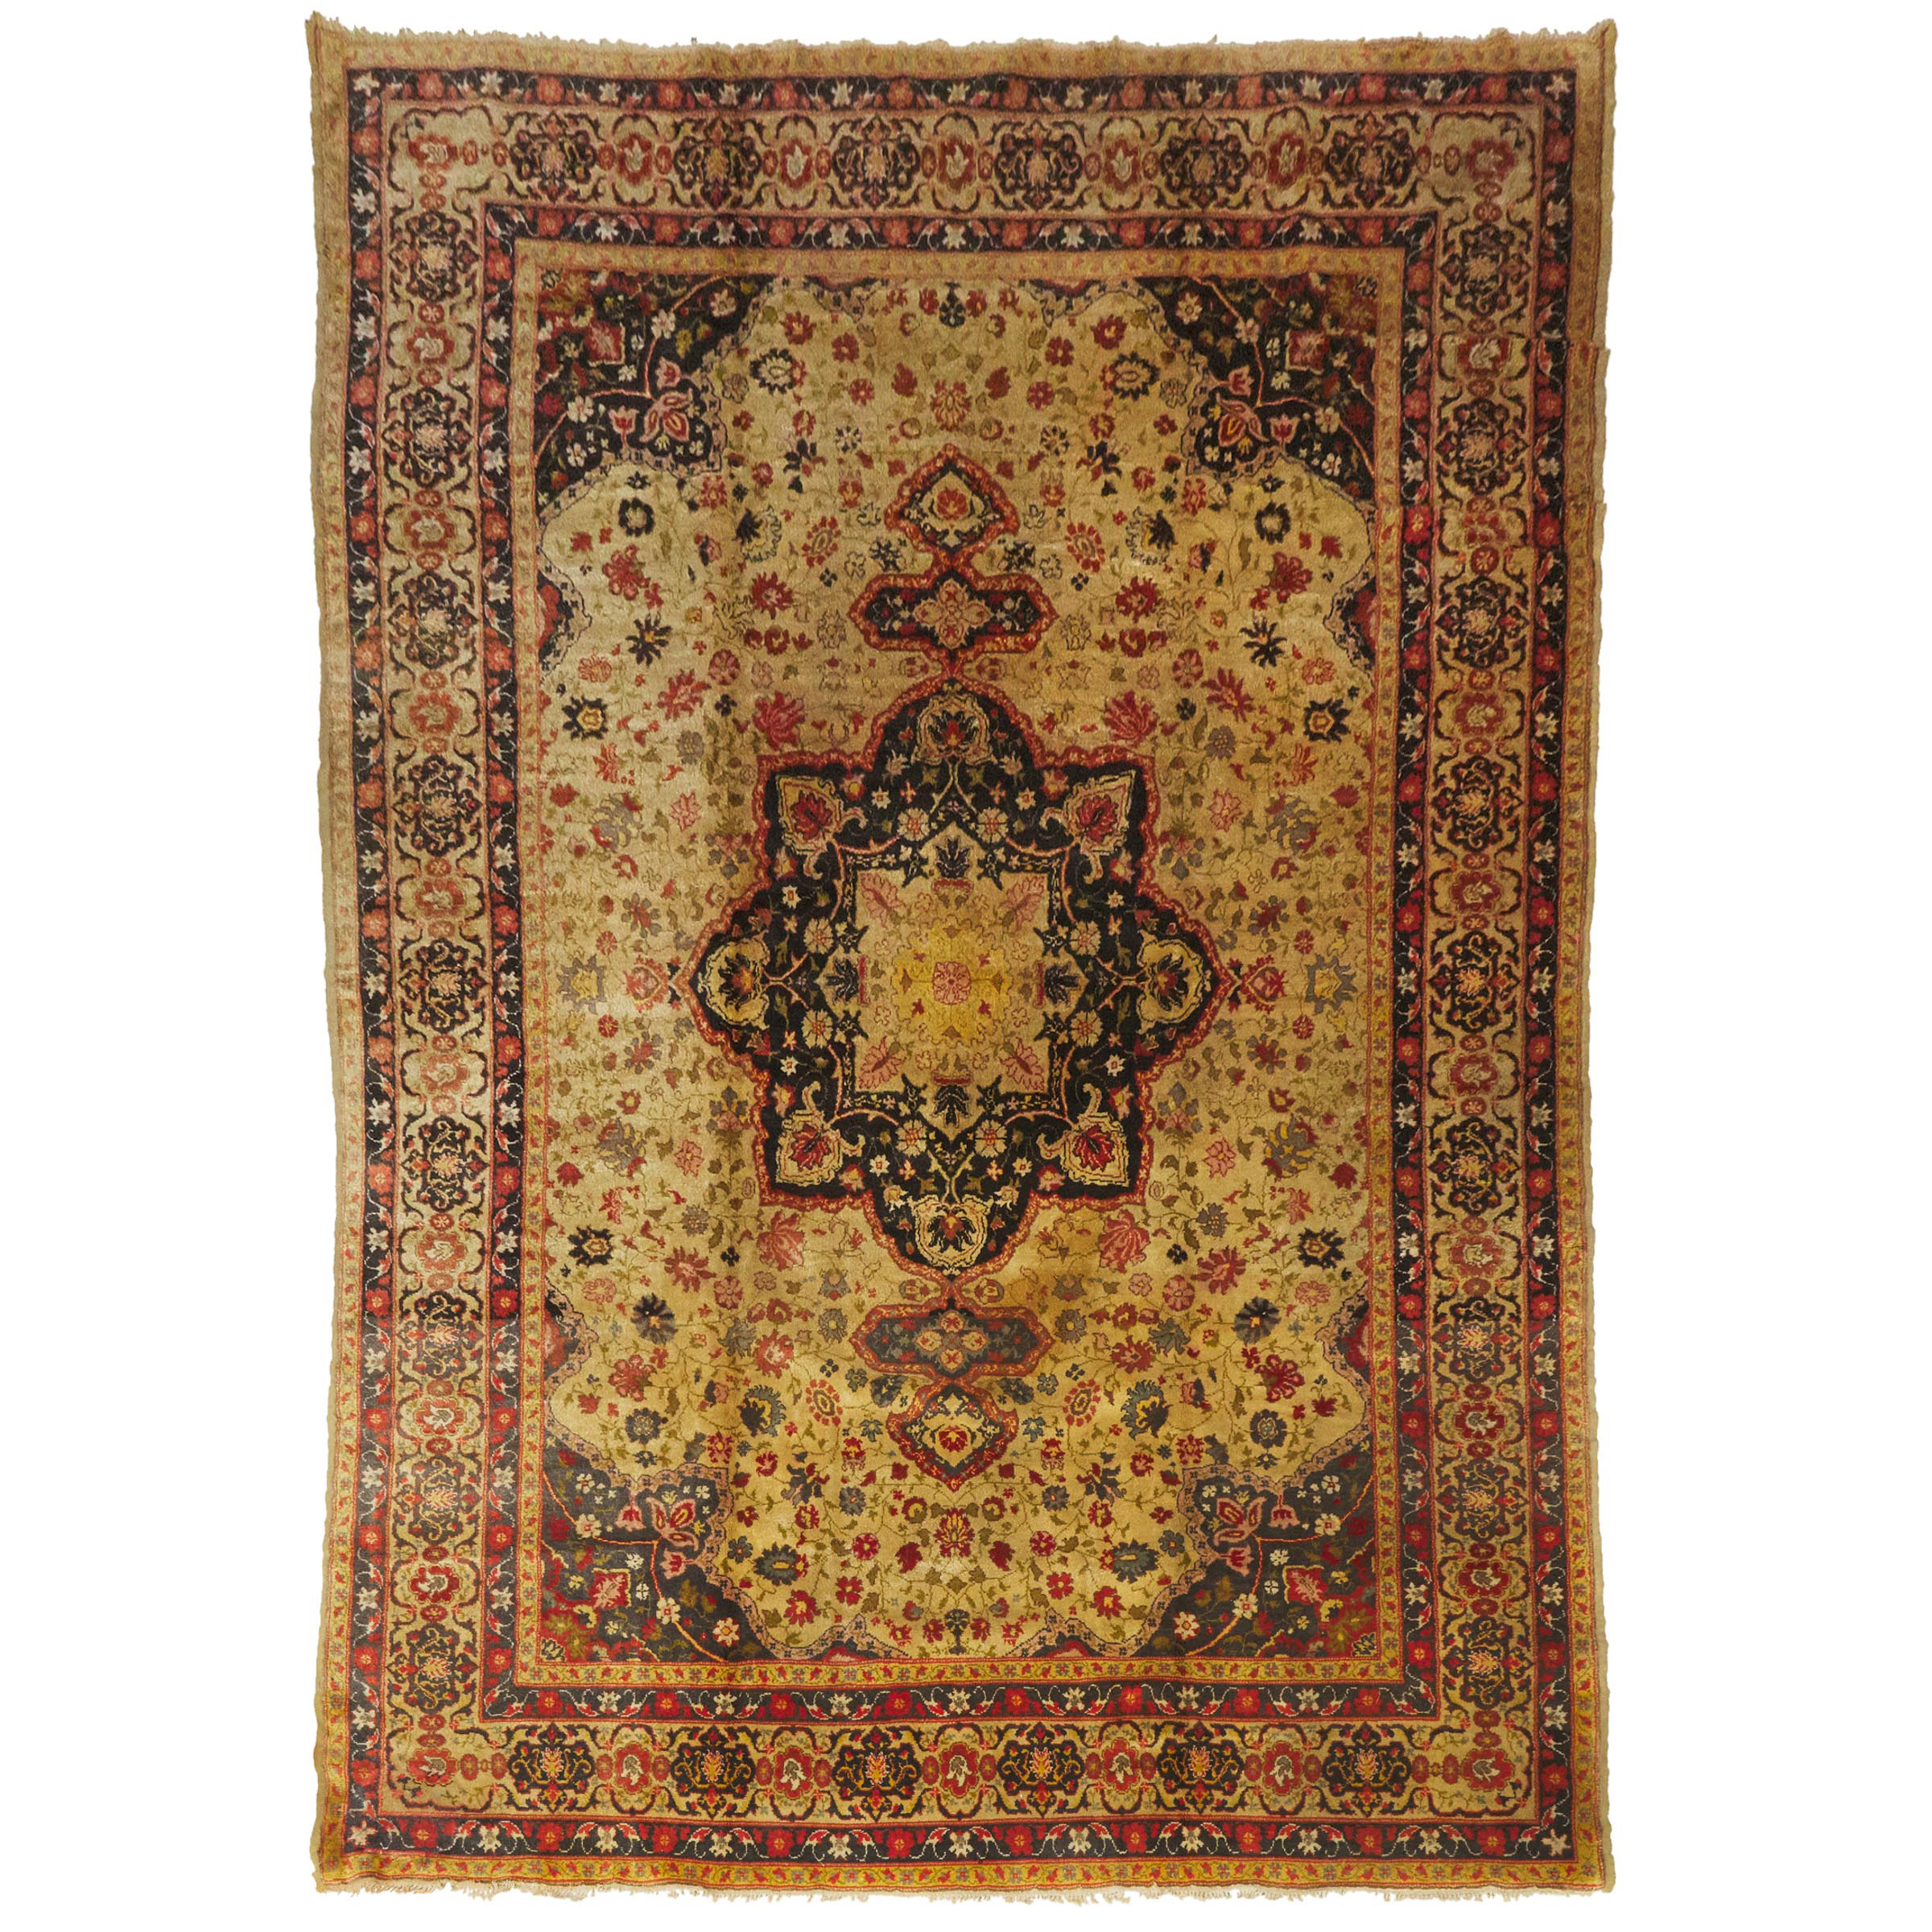 Spanish Aubusson Design Carpet, c.1870/90